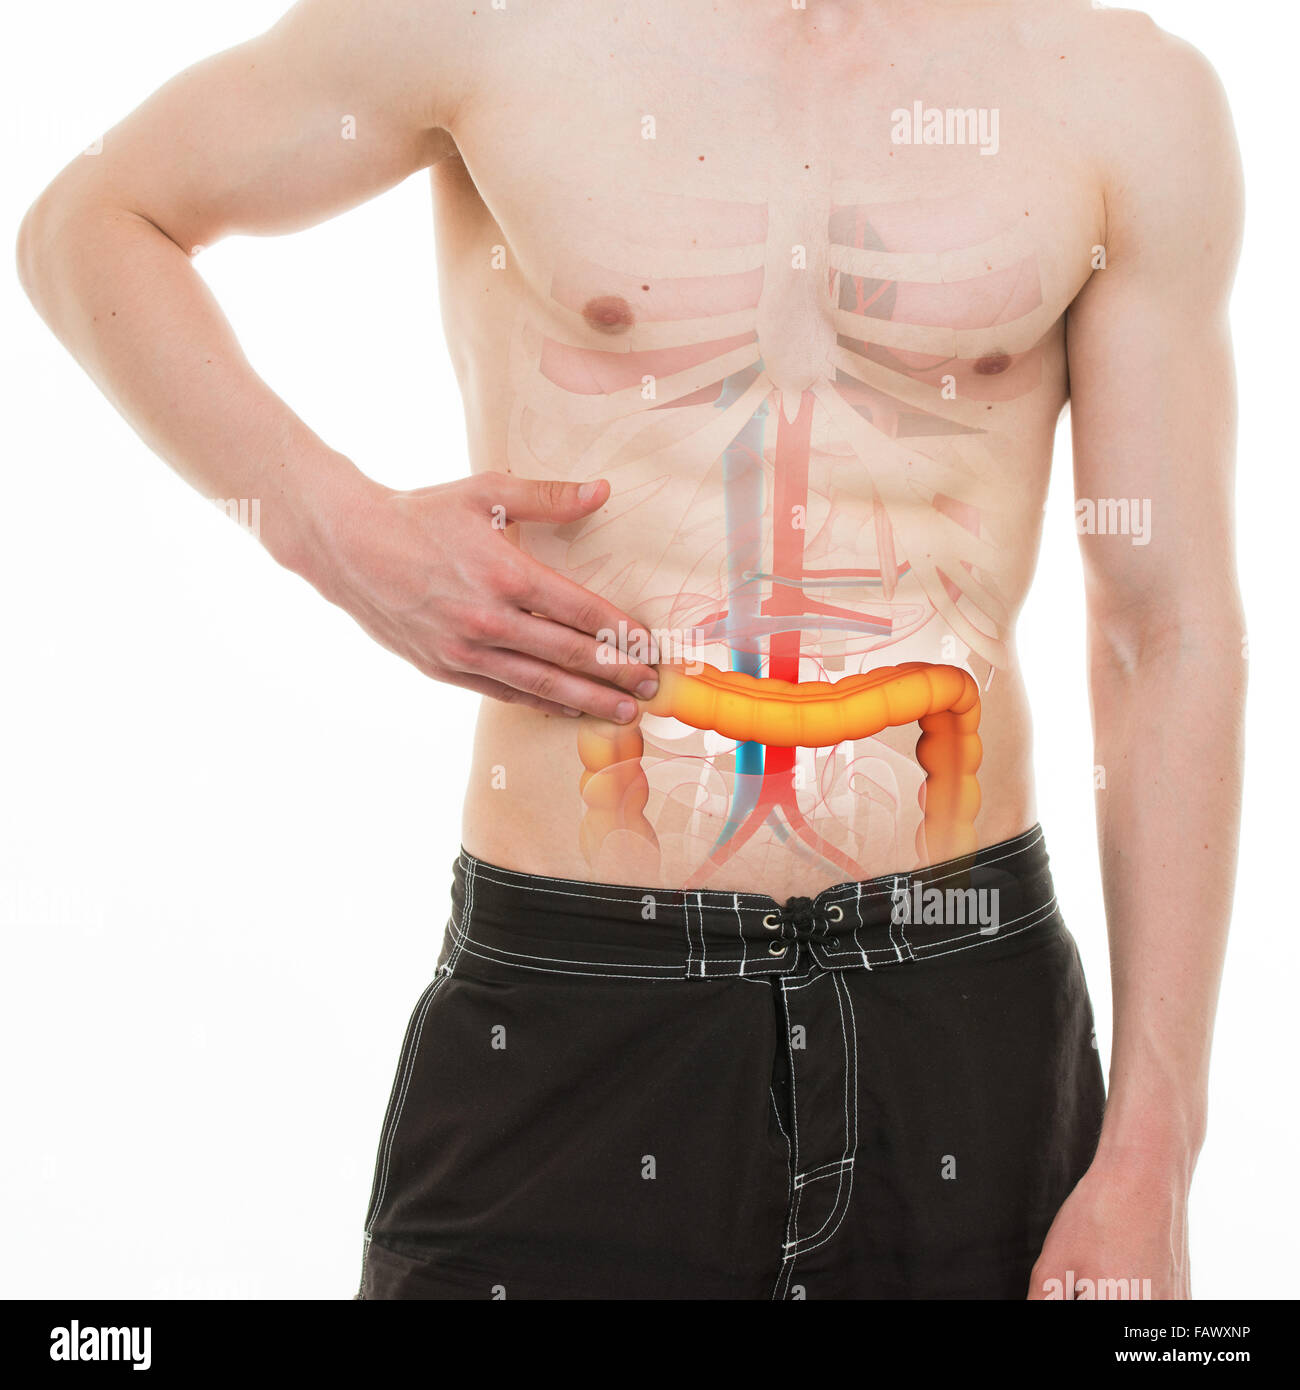 Douleur abdominale - Colon intestin douleur côté droit - anatomie ...